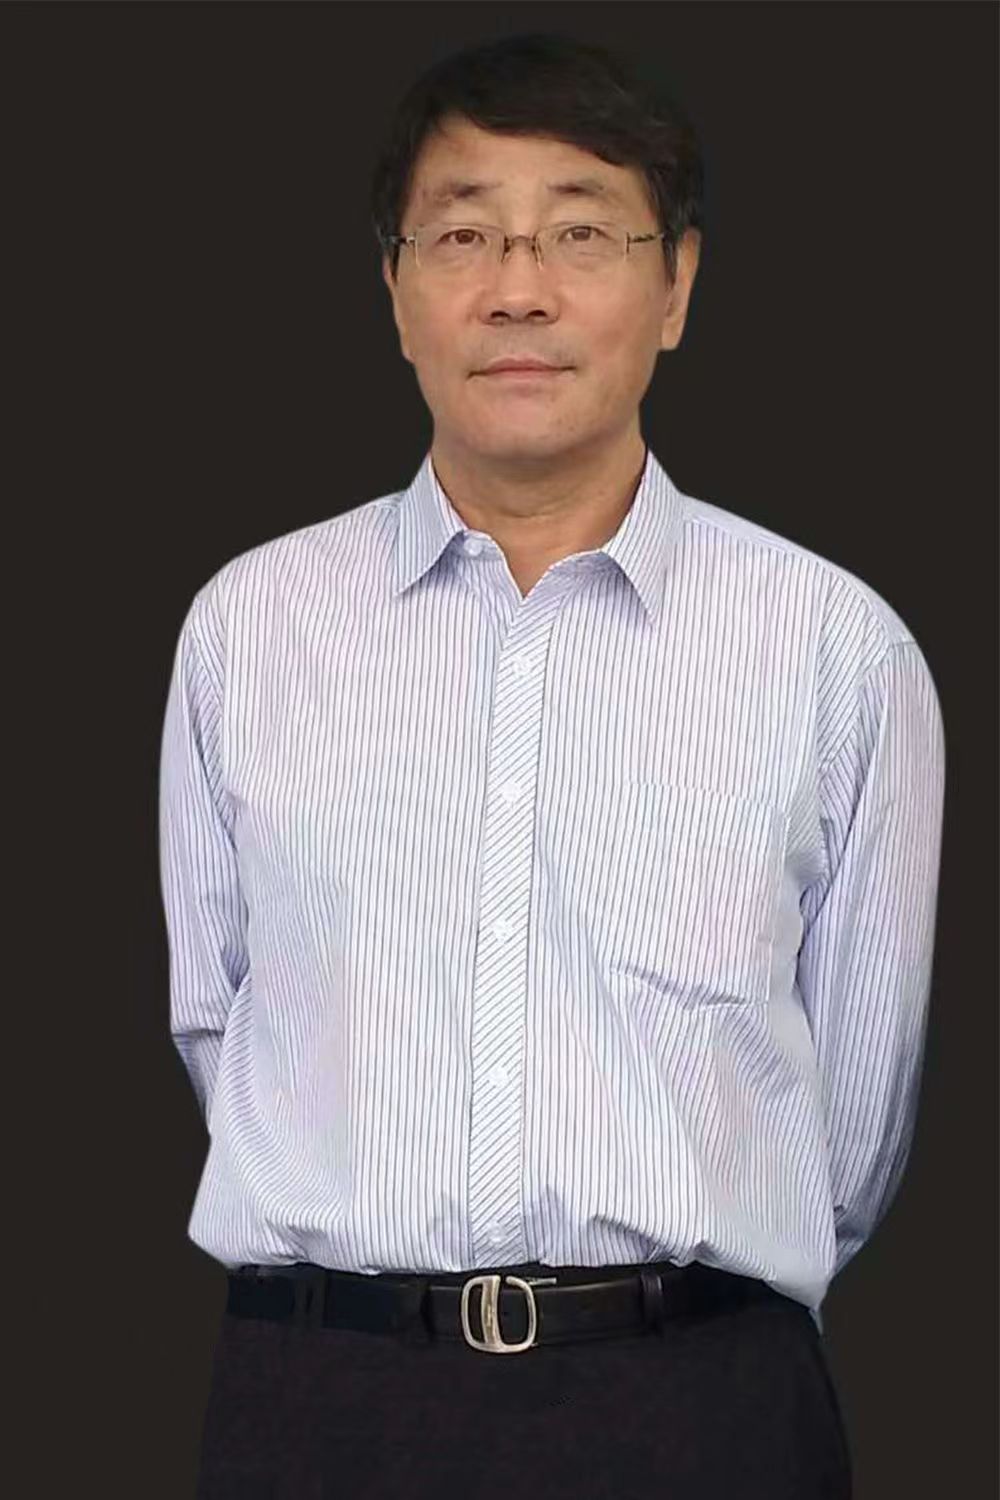 Xinqi Liu